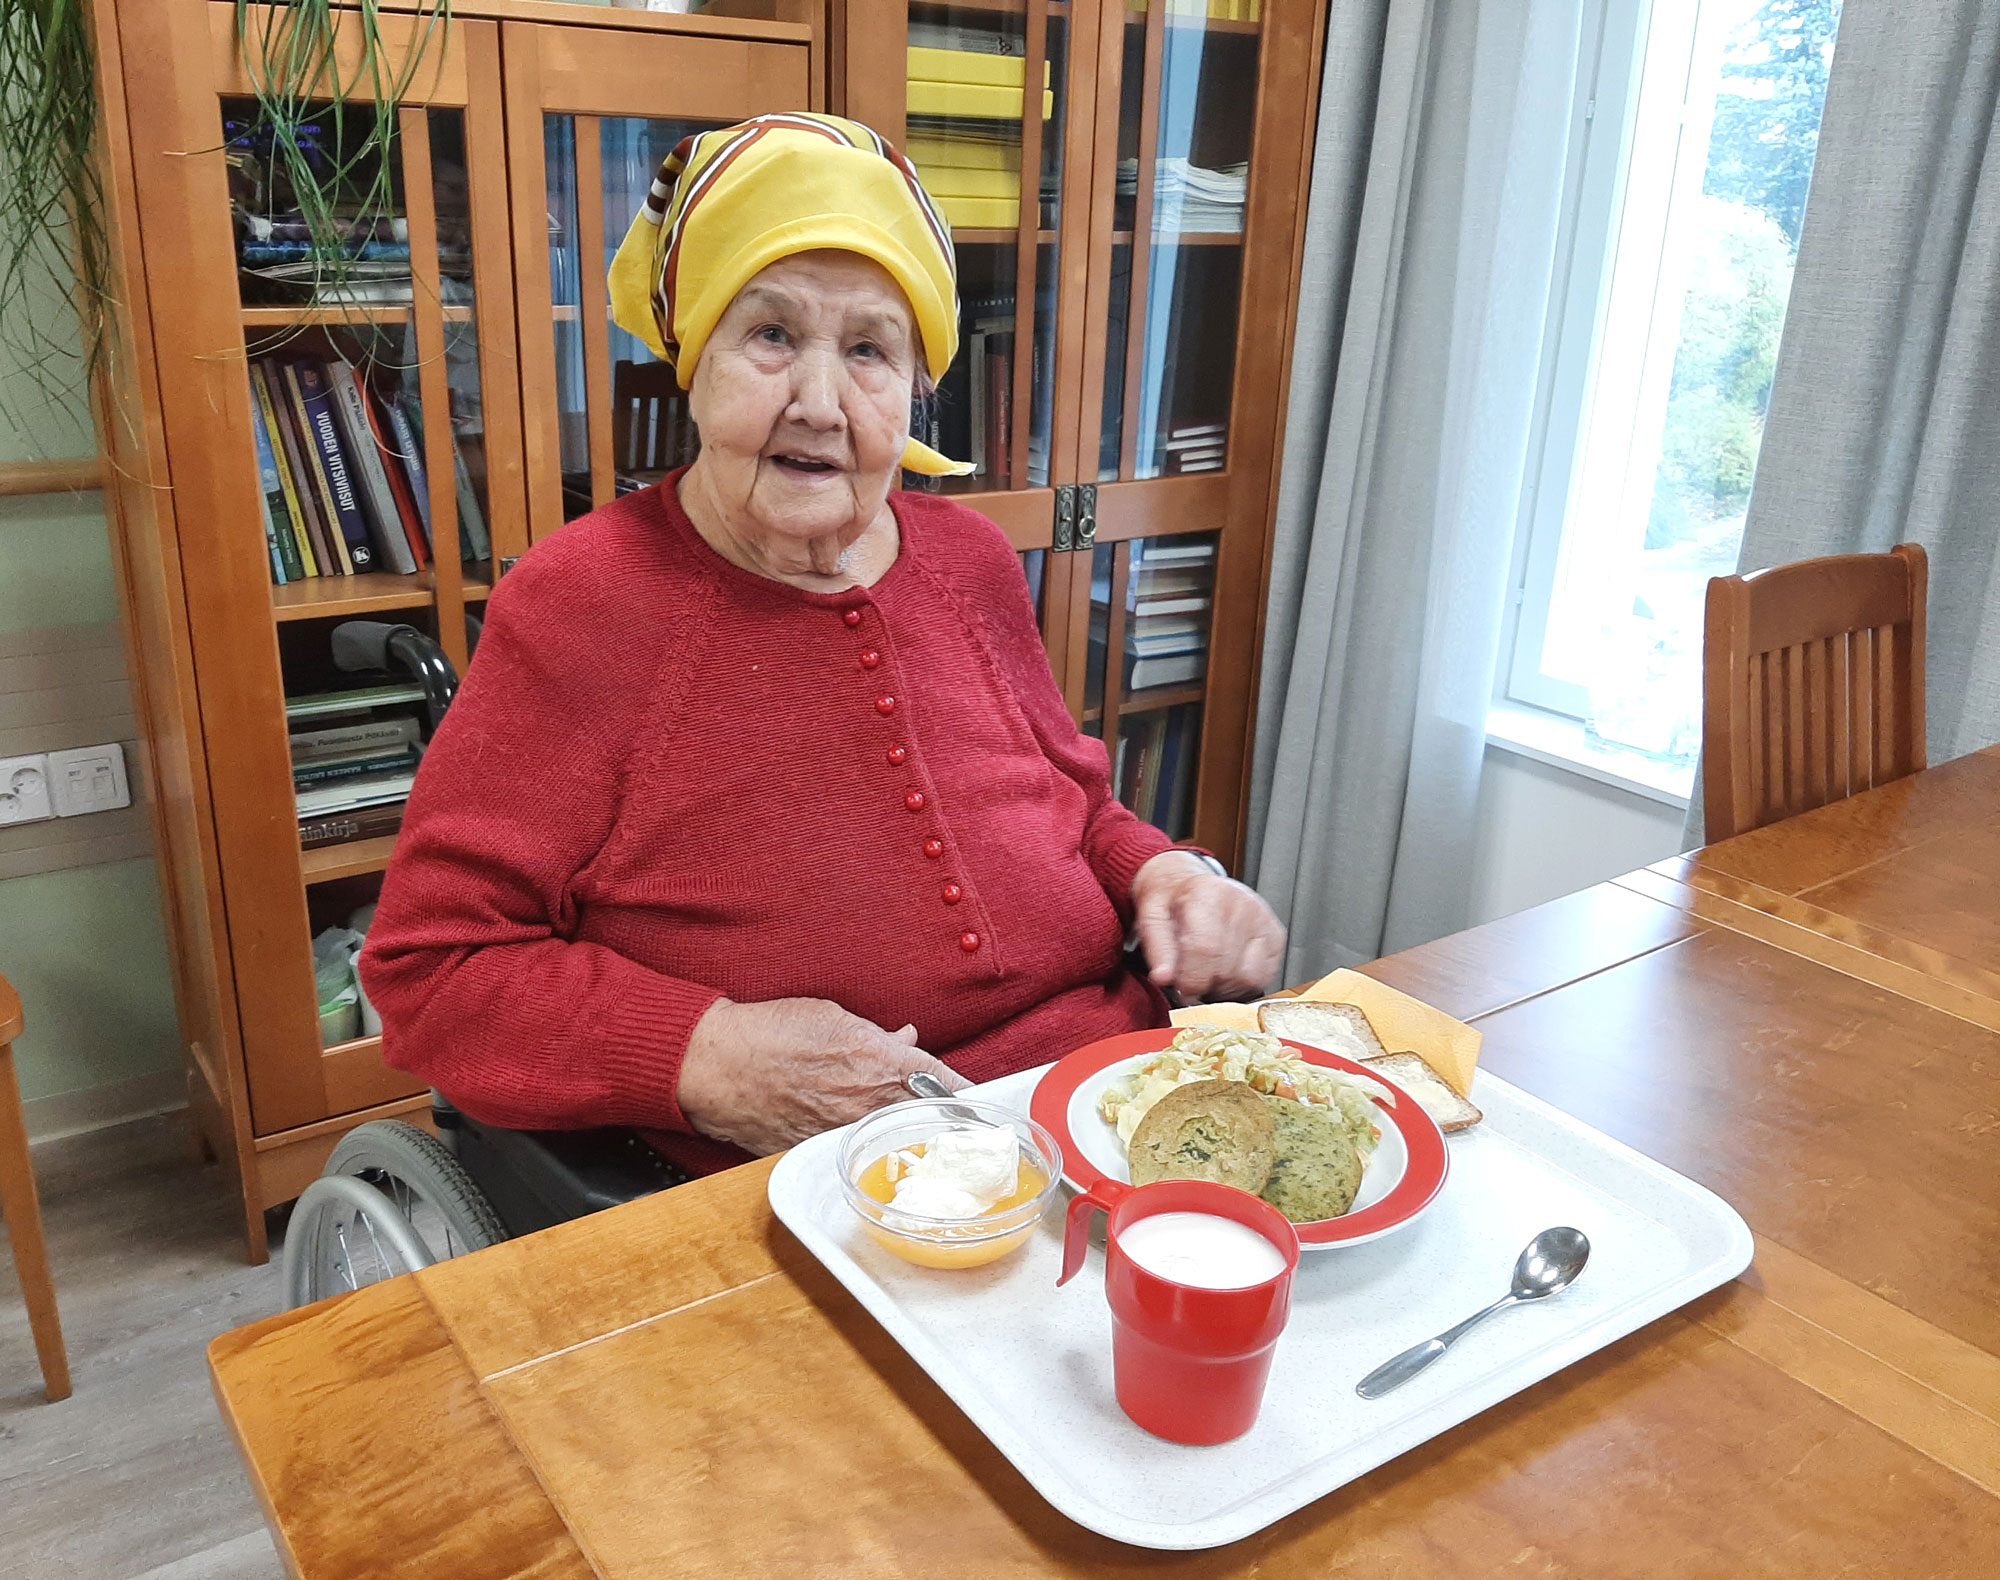 Esteri Kallionpää istahtaa mielellään aterioimaan oman kerroksensa oleskelunurkkaukseen tai Höllinkodon ruokasaliin. Hänen mukaansa ruoka maistuu vähän liiankin hyvältä.